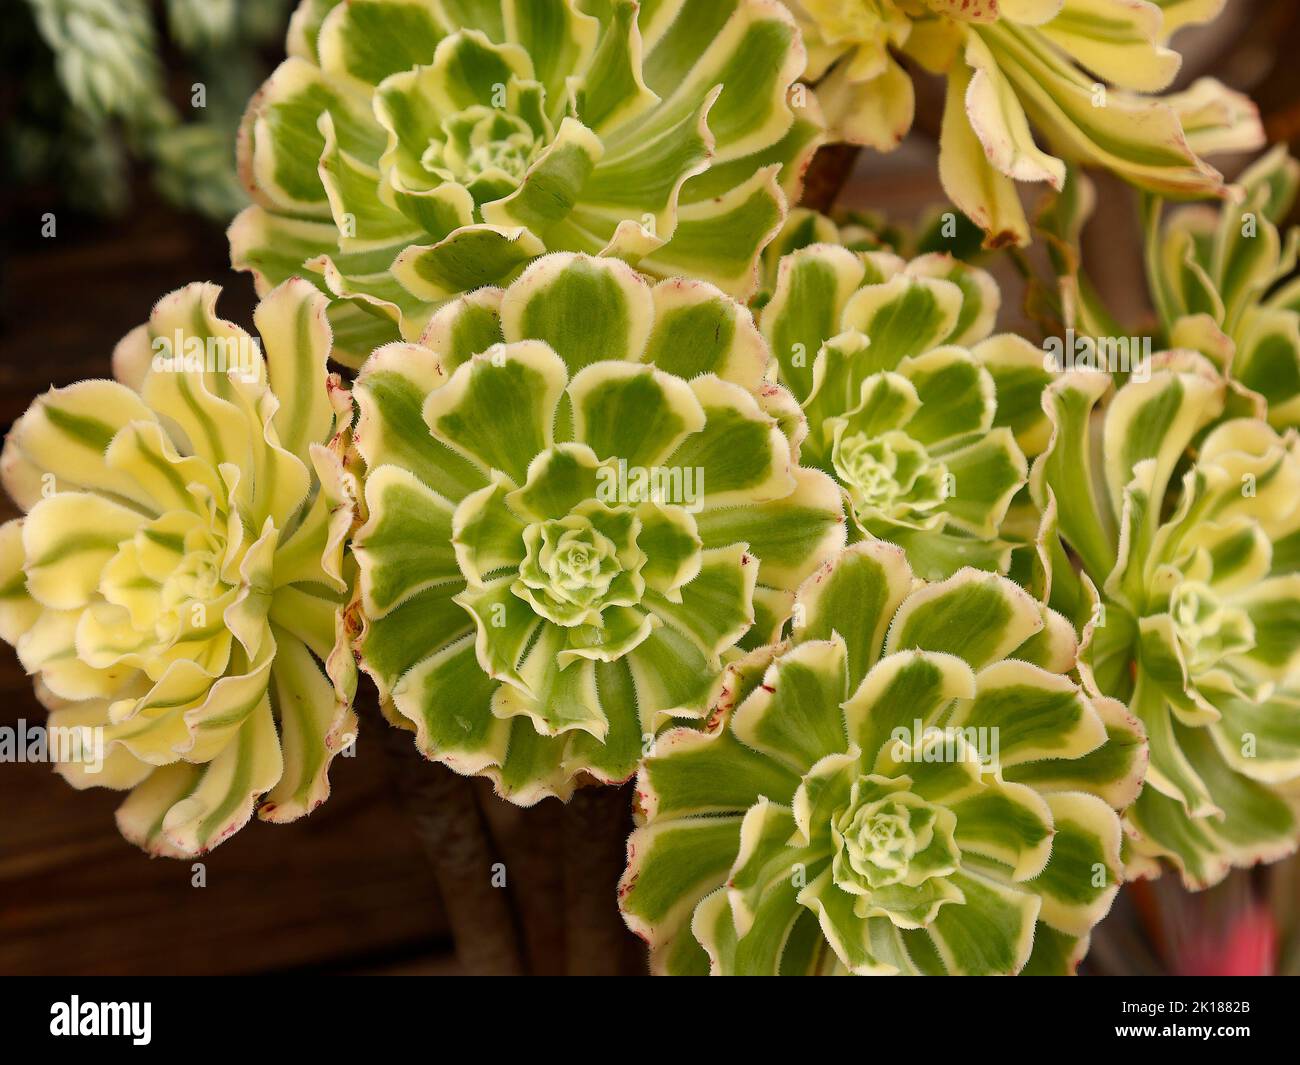 Close up of the variegated leaves of the succulent plant Aeonium arboreum variegata, Stock Photo